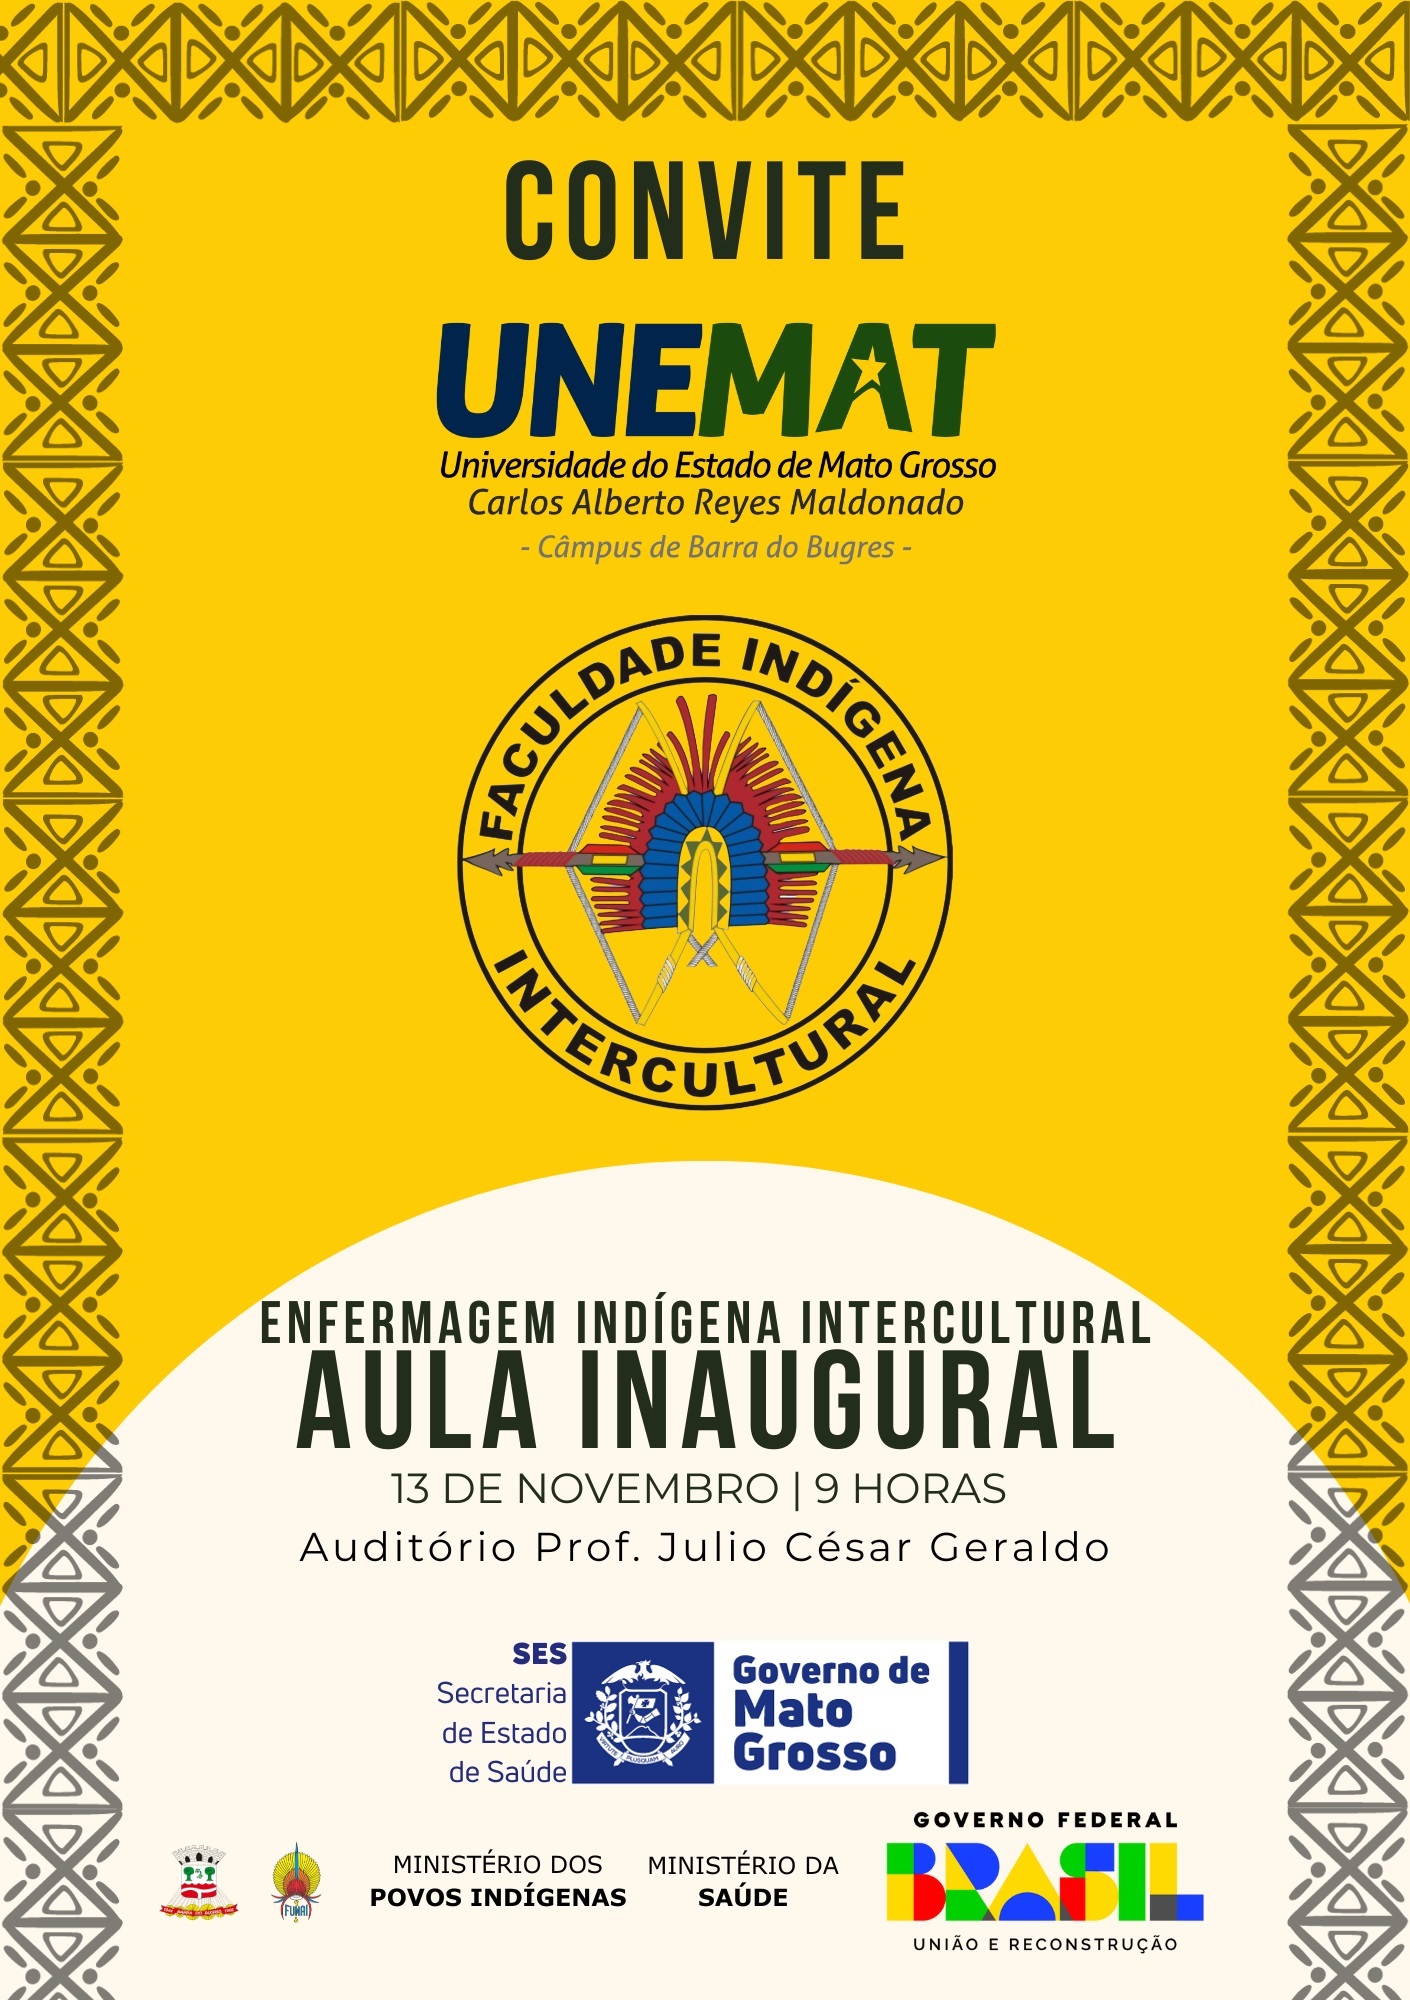 UNEMAT - Universidade do Estado de Mato Grosso